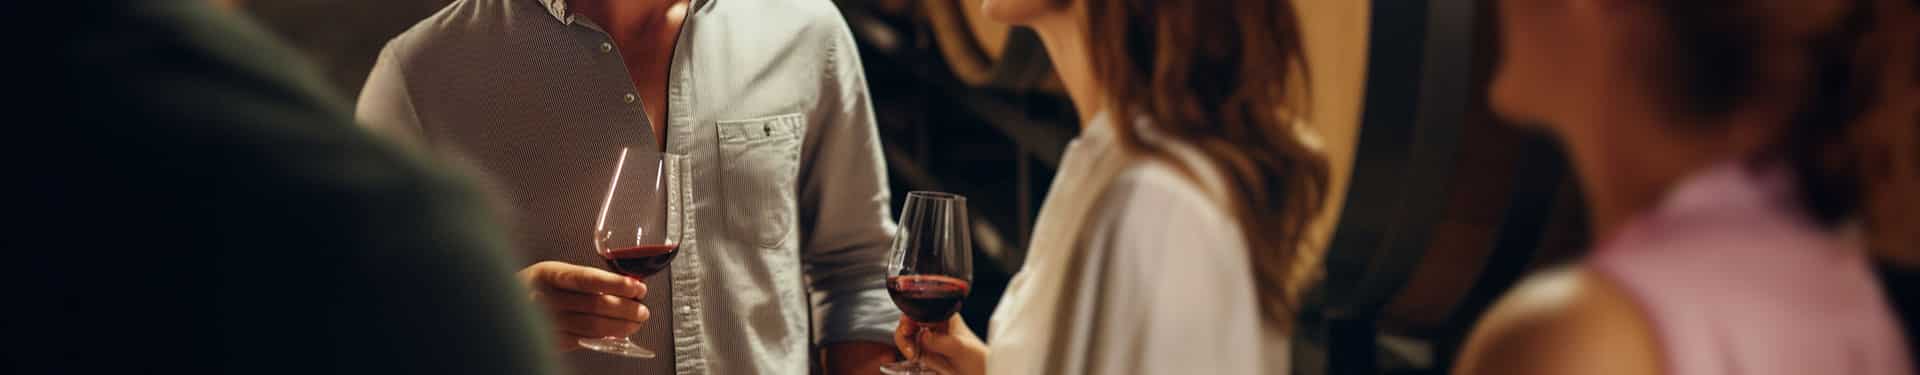 Un homme et une femme tenant des verres de vin rouge dans leur main.